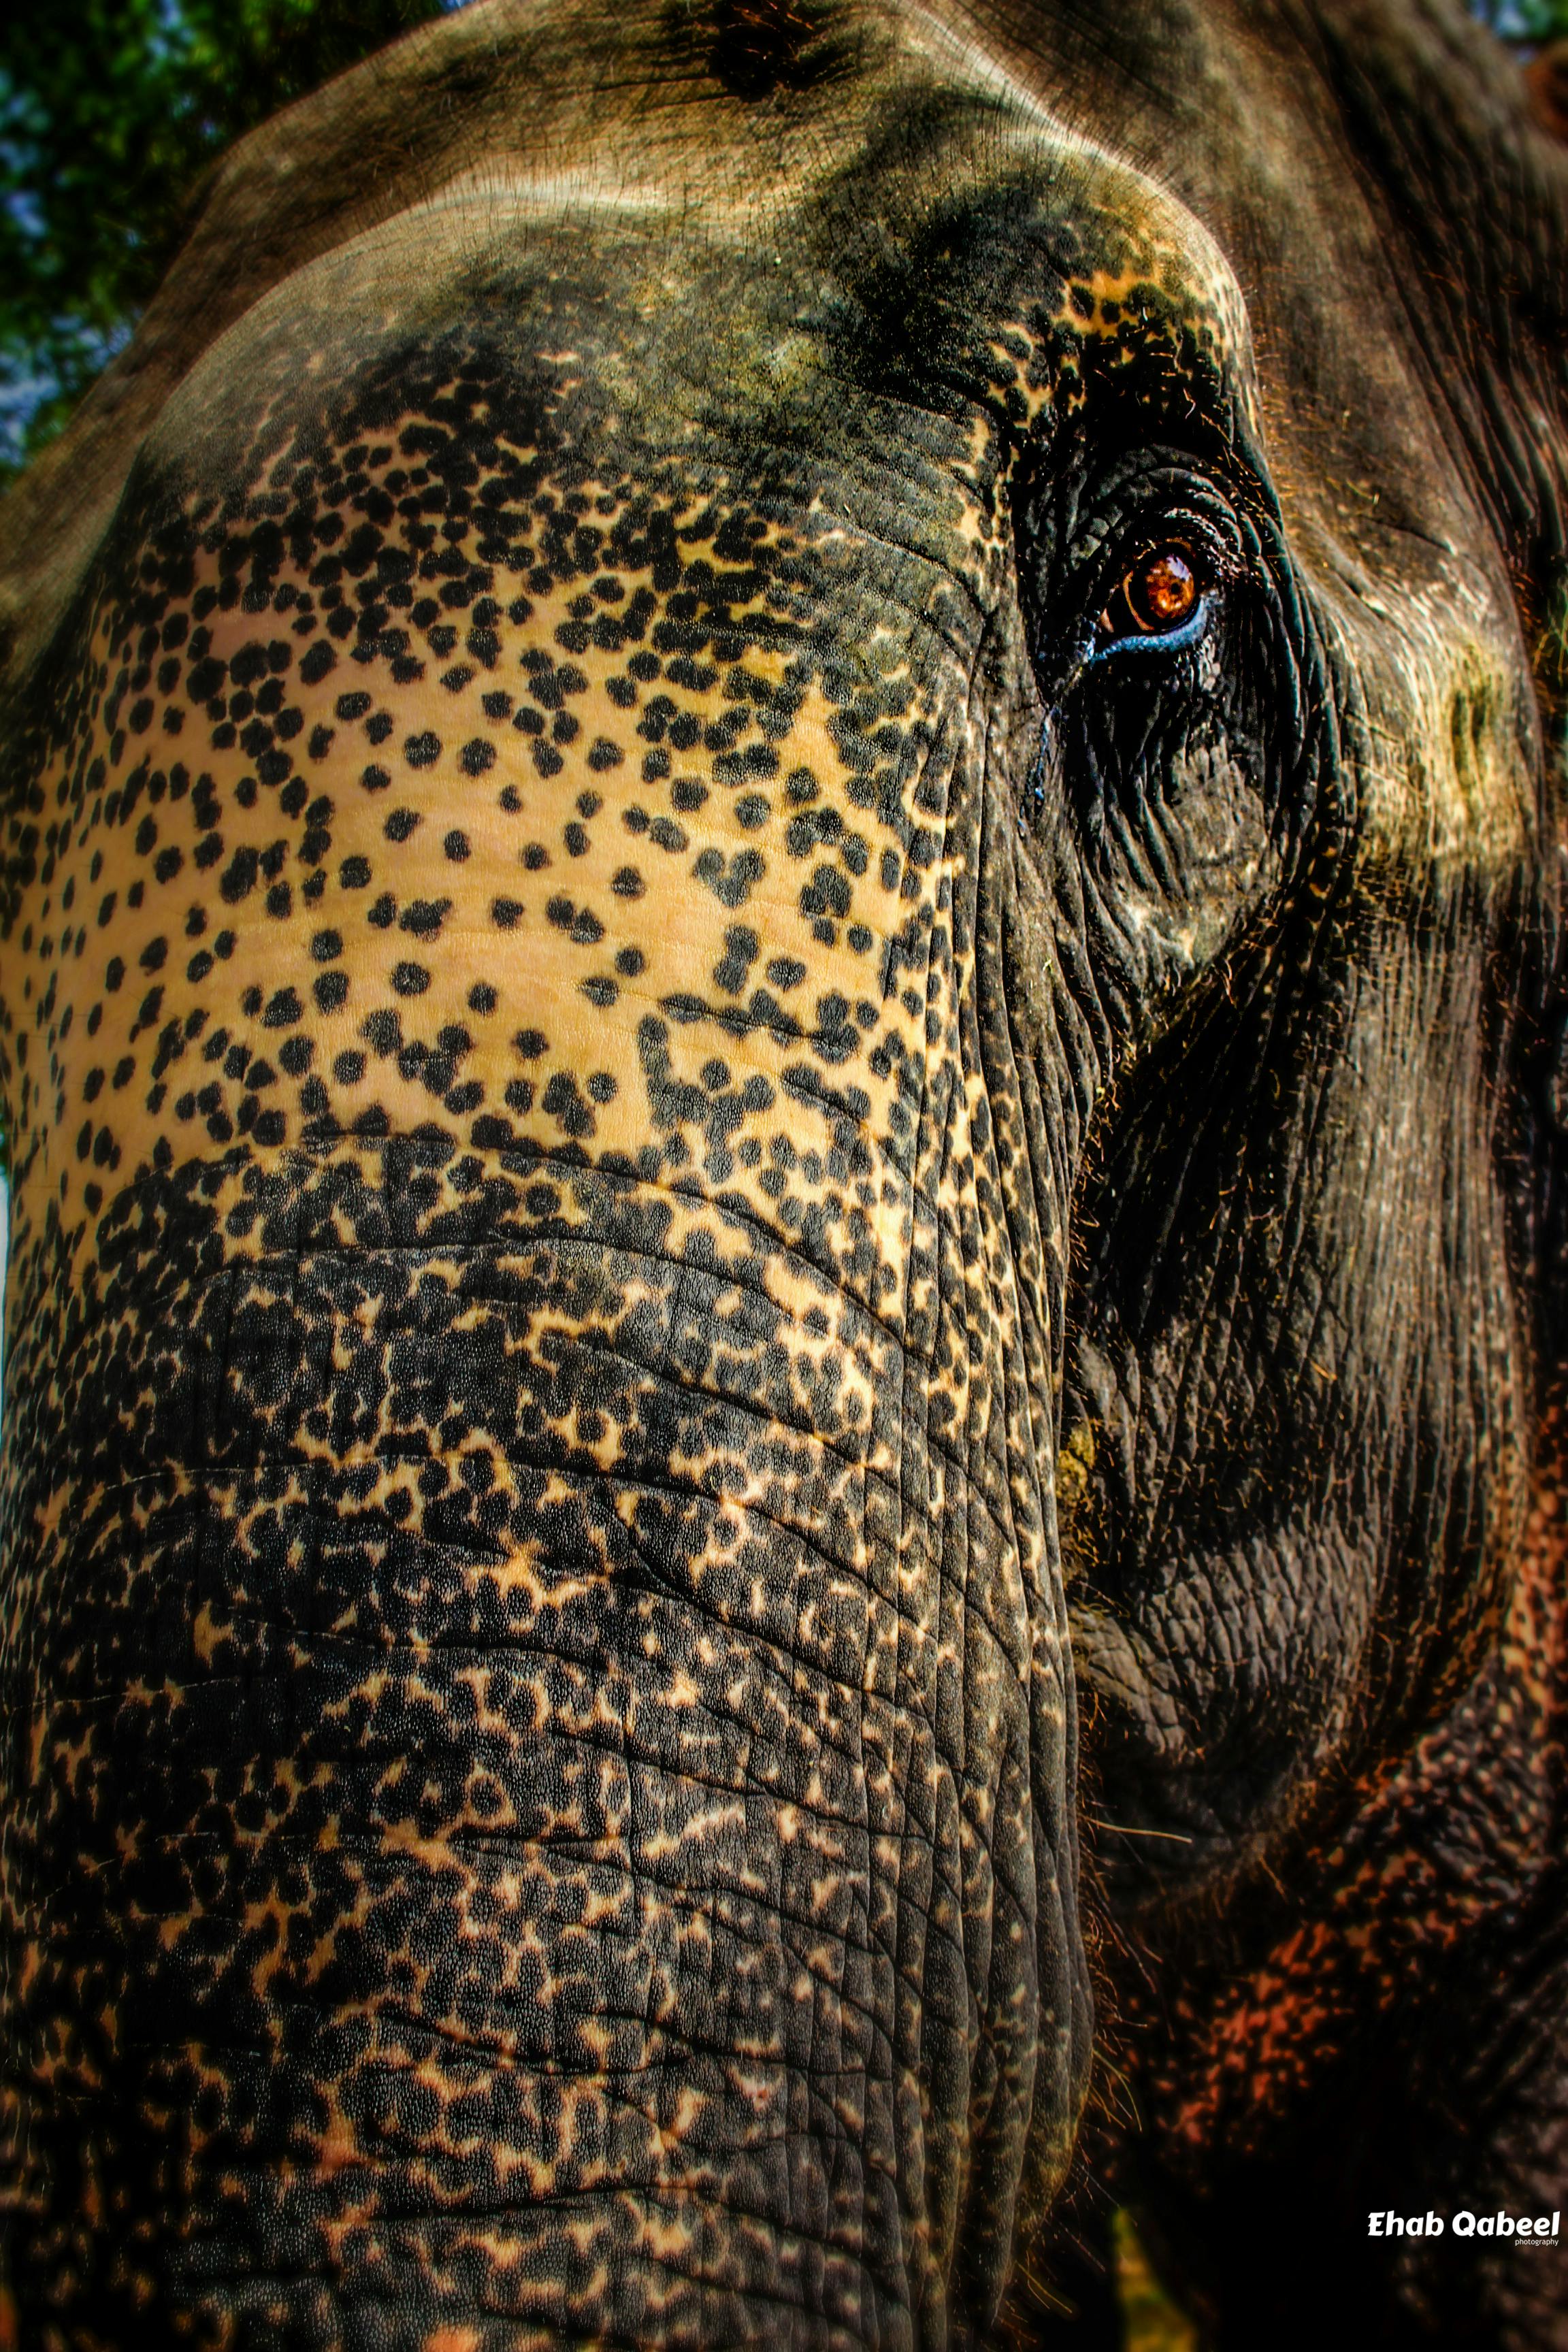 Kostenloses Foto Zum Thema Elefant Grosse Augen Tier